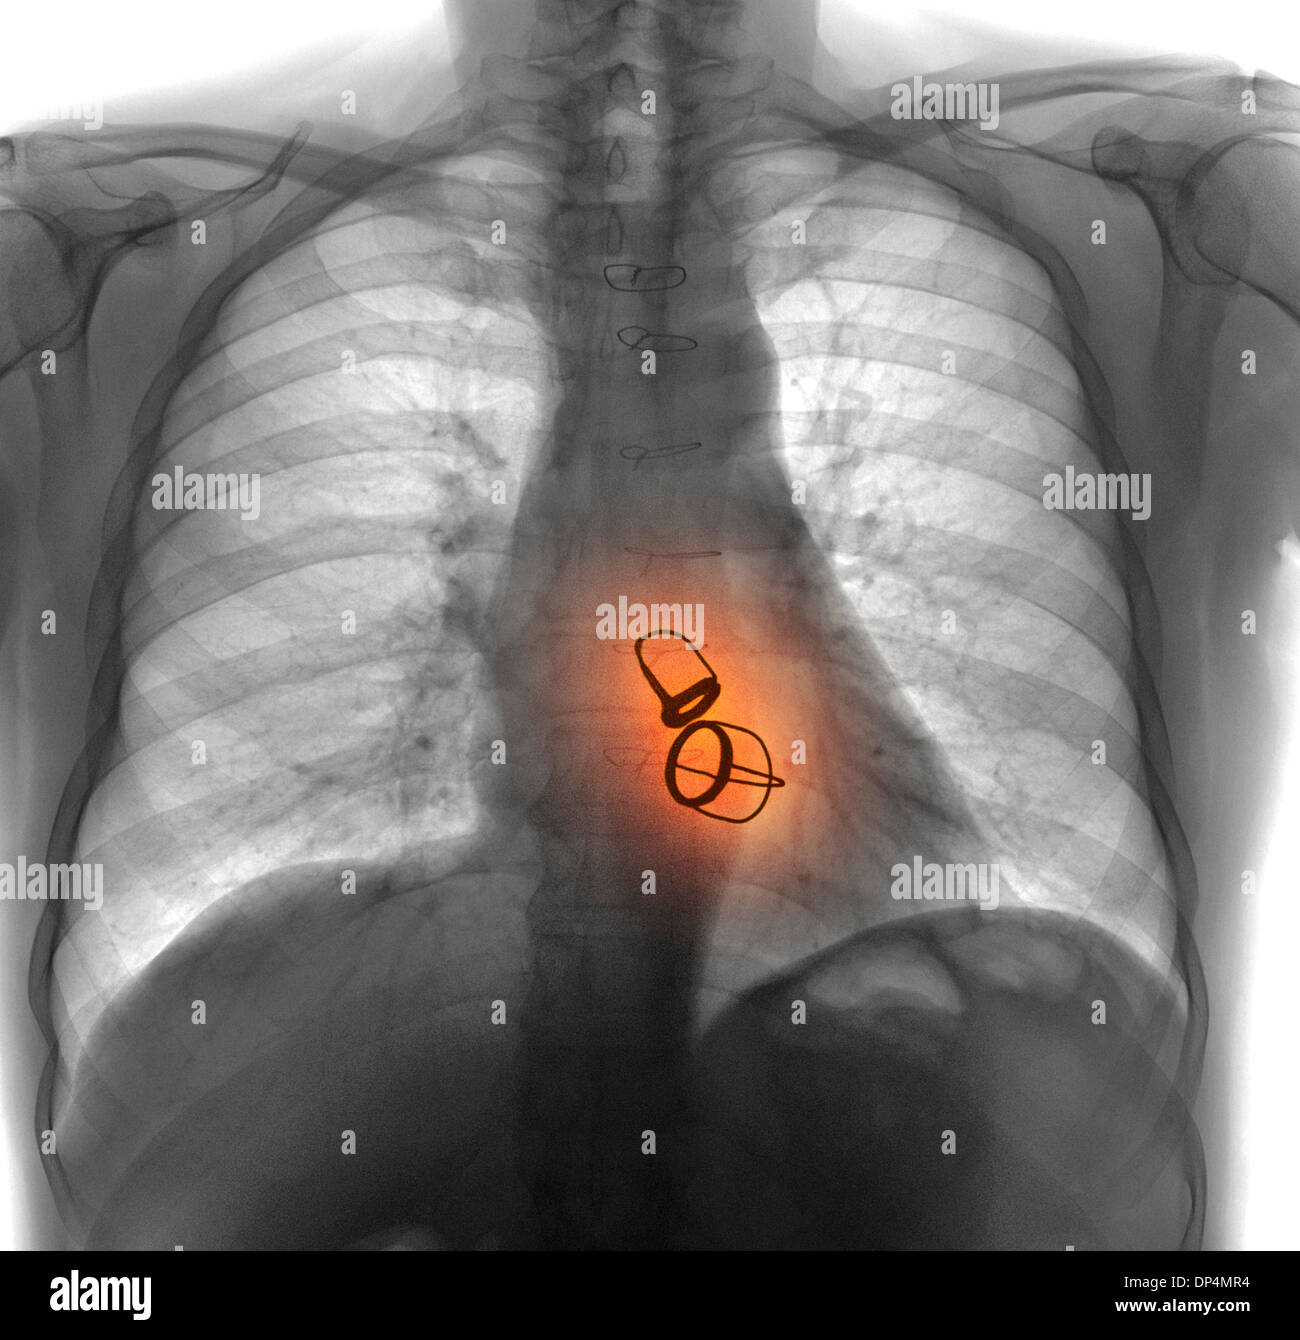 Valvole cardiache protesiche, X-ray Foto Stock